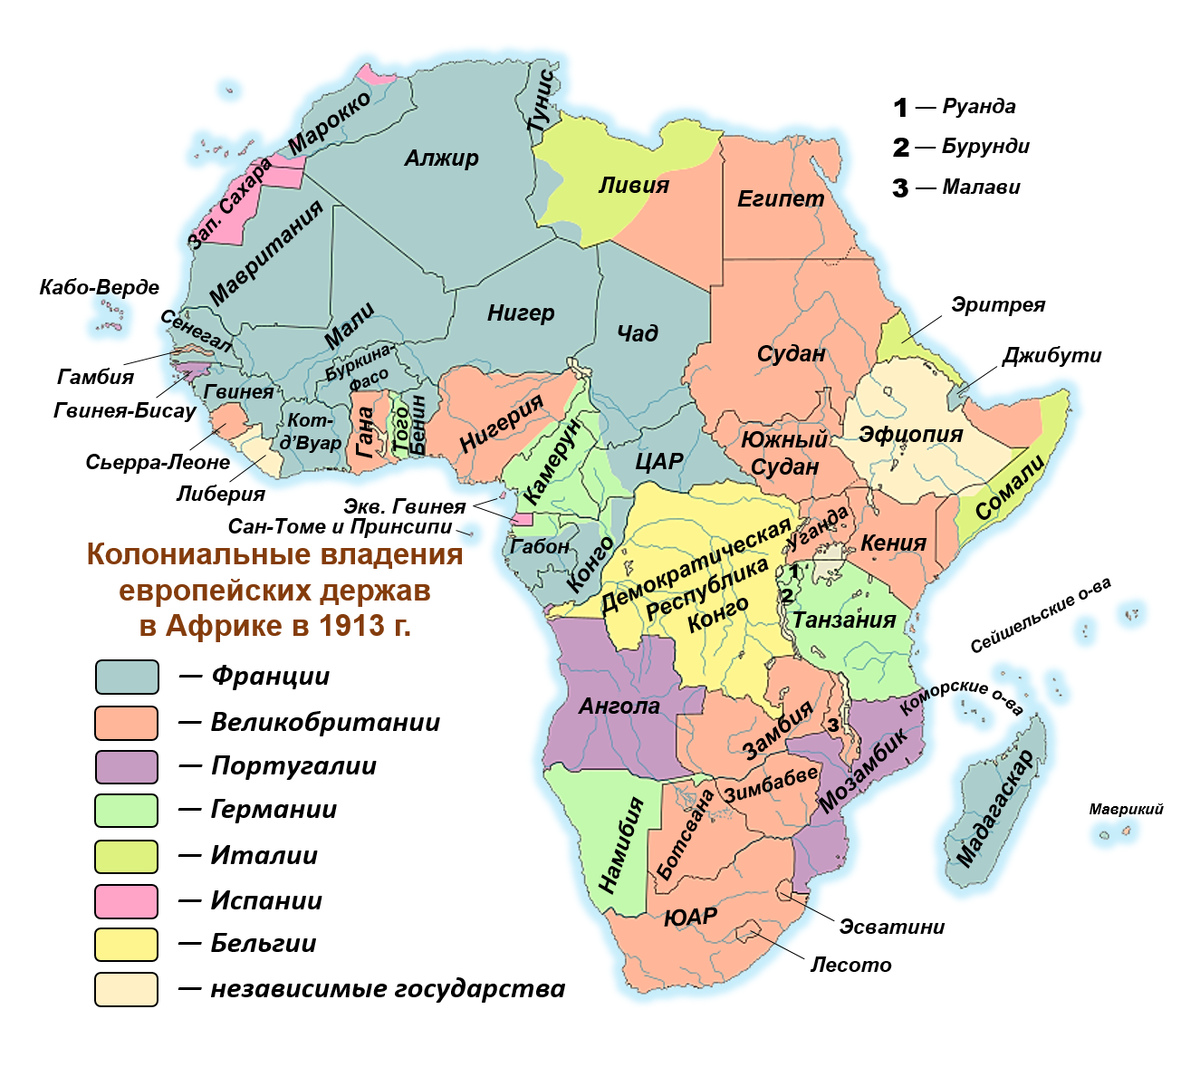 Панафриканизм. Карта колоний Африки. Карта колоний в Африке 19 век. Колониальный раздел Африки карта 19 век. Колониальный раздел Африки в начале 20 века.